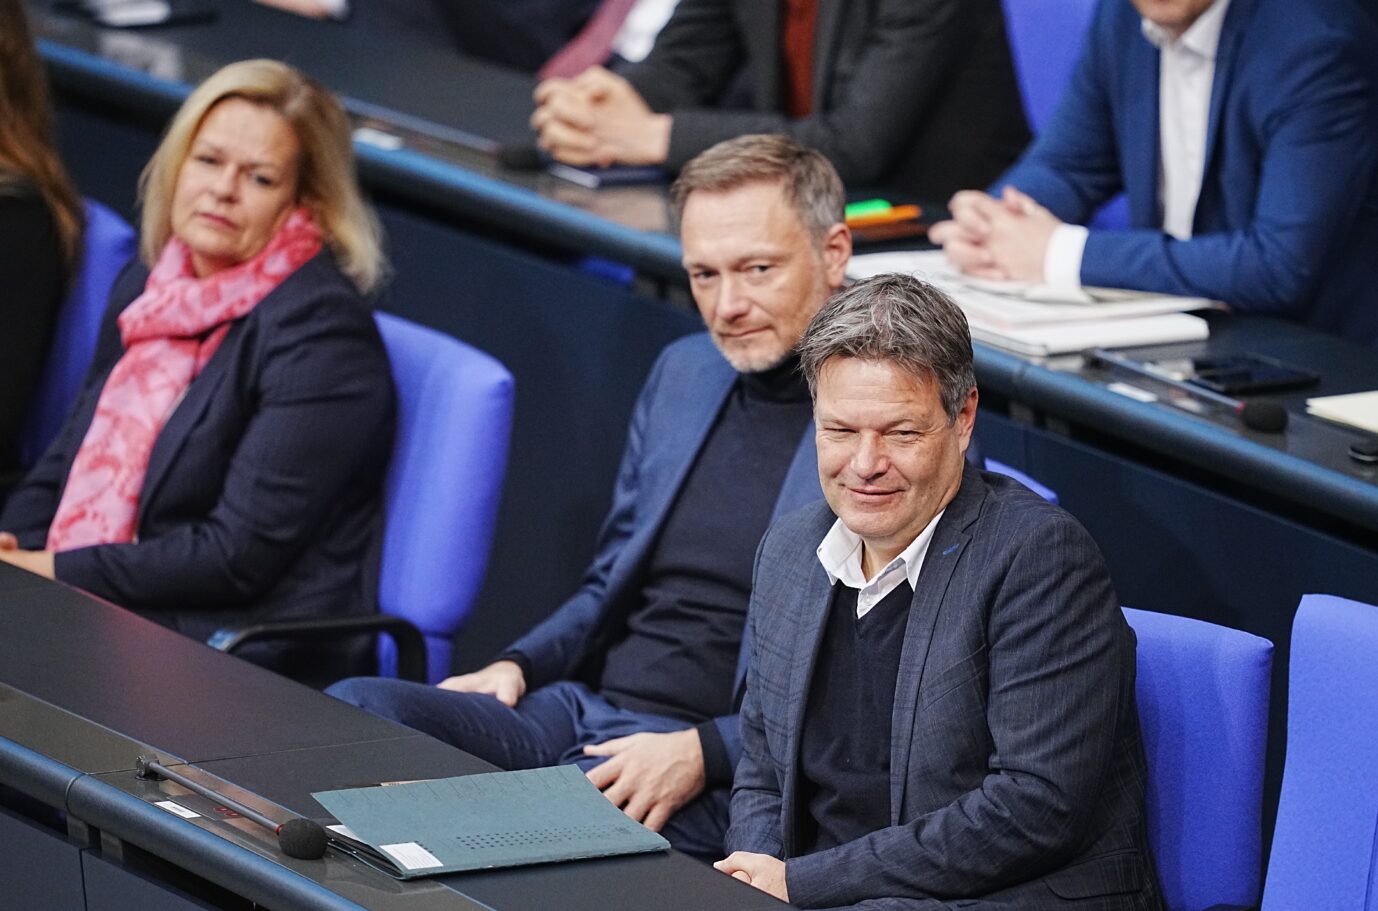 Rezession: Innenministerin Nancy Faeser (SPD) und Finanzminister Christian Lindner (FDP) sehen nicht Wirtschaftsminister Robert Habeck (Grüne) in der Verantwortung für die wirtschaftliche Lage, sondern die AfD.